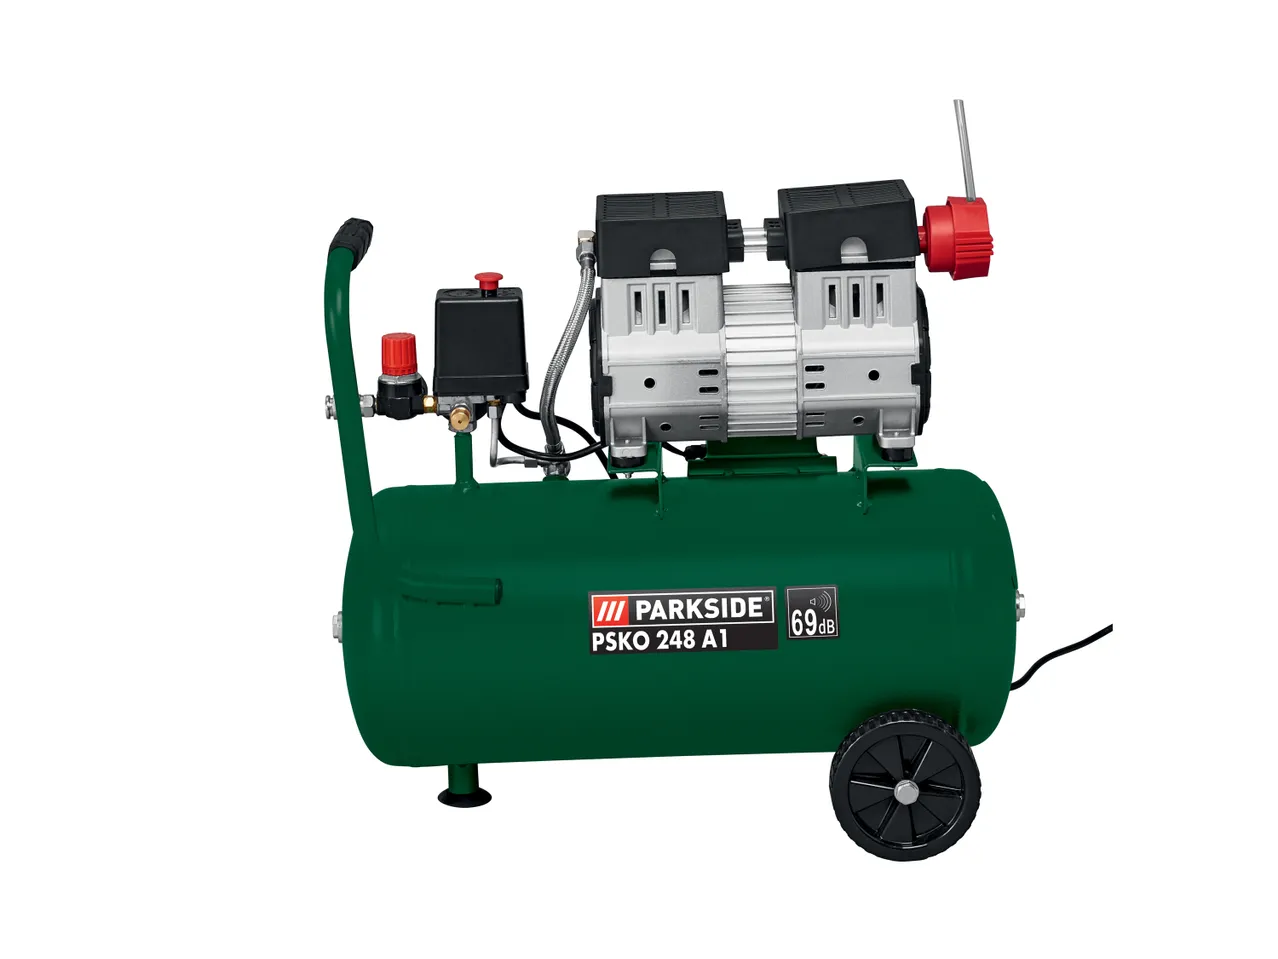 Compressore Parkside, prezzo 129 EUR 
Compressore 24L 
- Motore a 2 cilindri silenzioso* ...